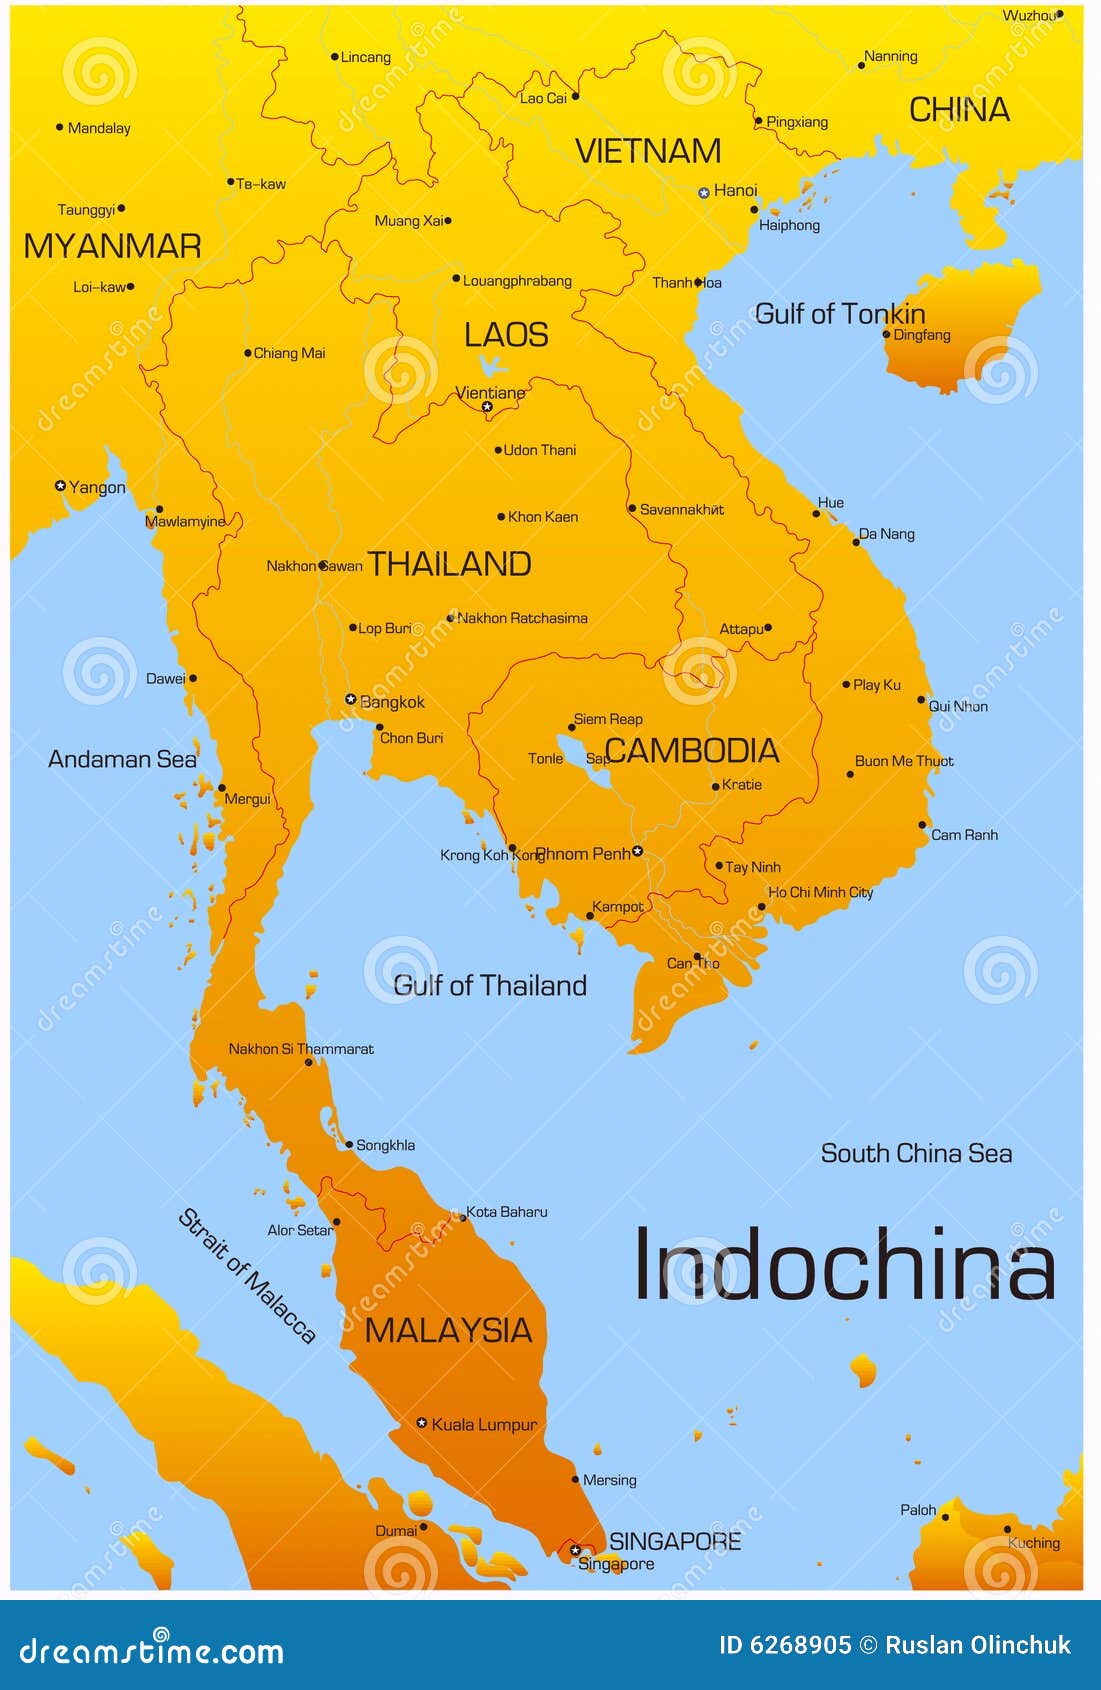 peninsula indochina Asian of